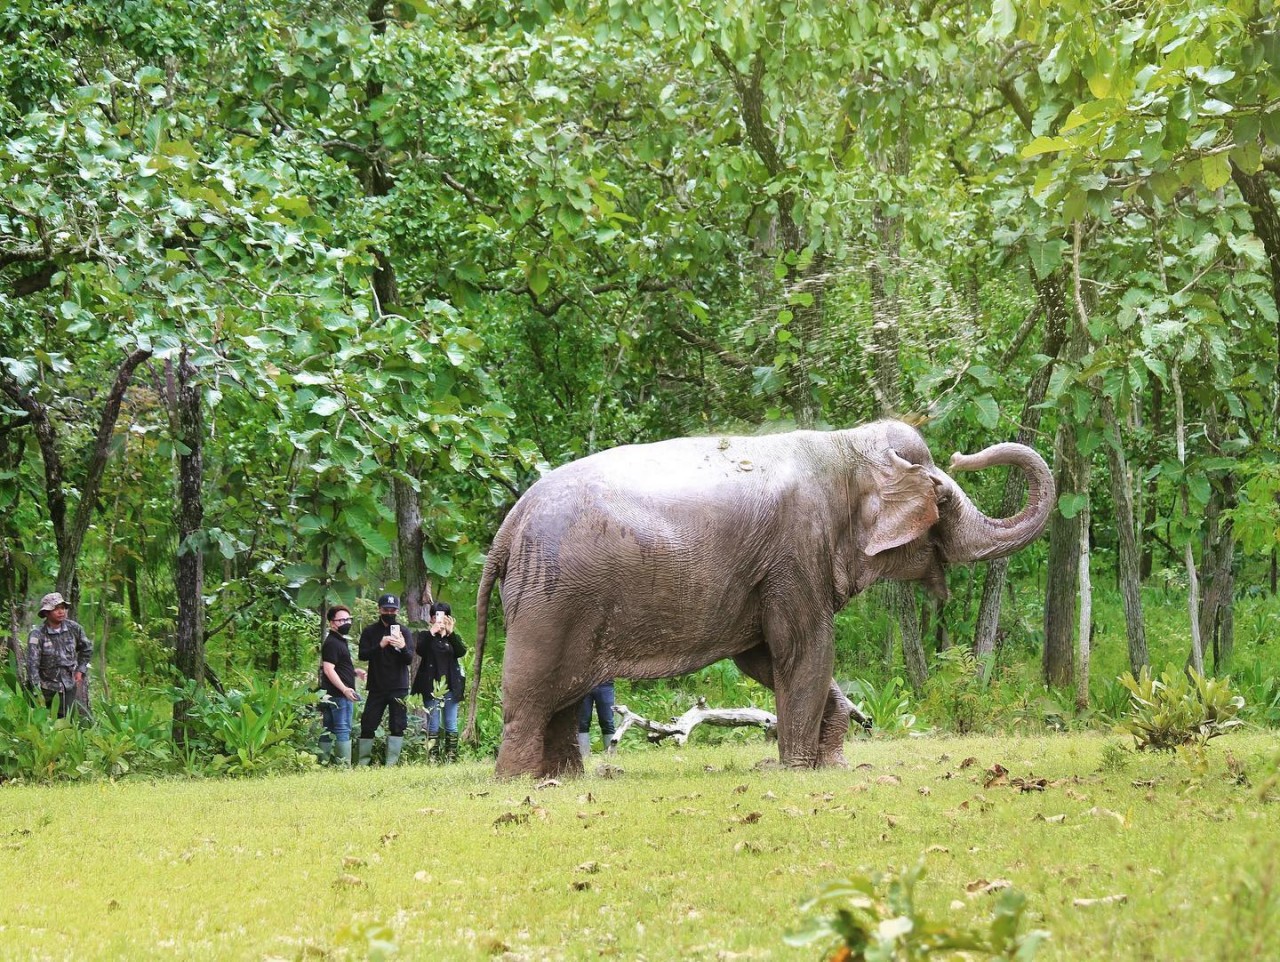 Mục tiêu của dự án nhằm triển khai mô hình hoạt động du lịch thân thiện với voi, chấm dứt các hoạt động du lịch cưỡi voi. (Ảnh: AAF)